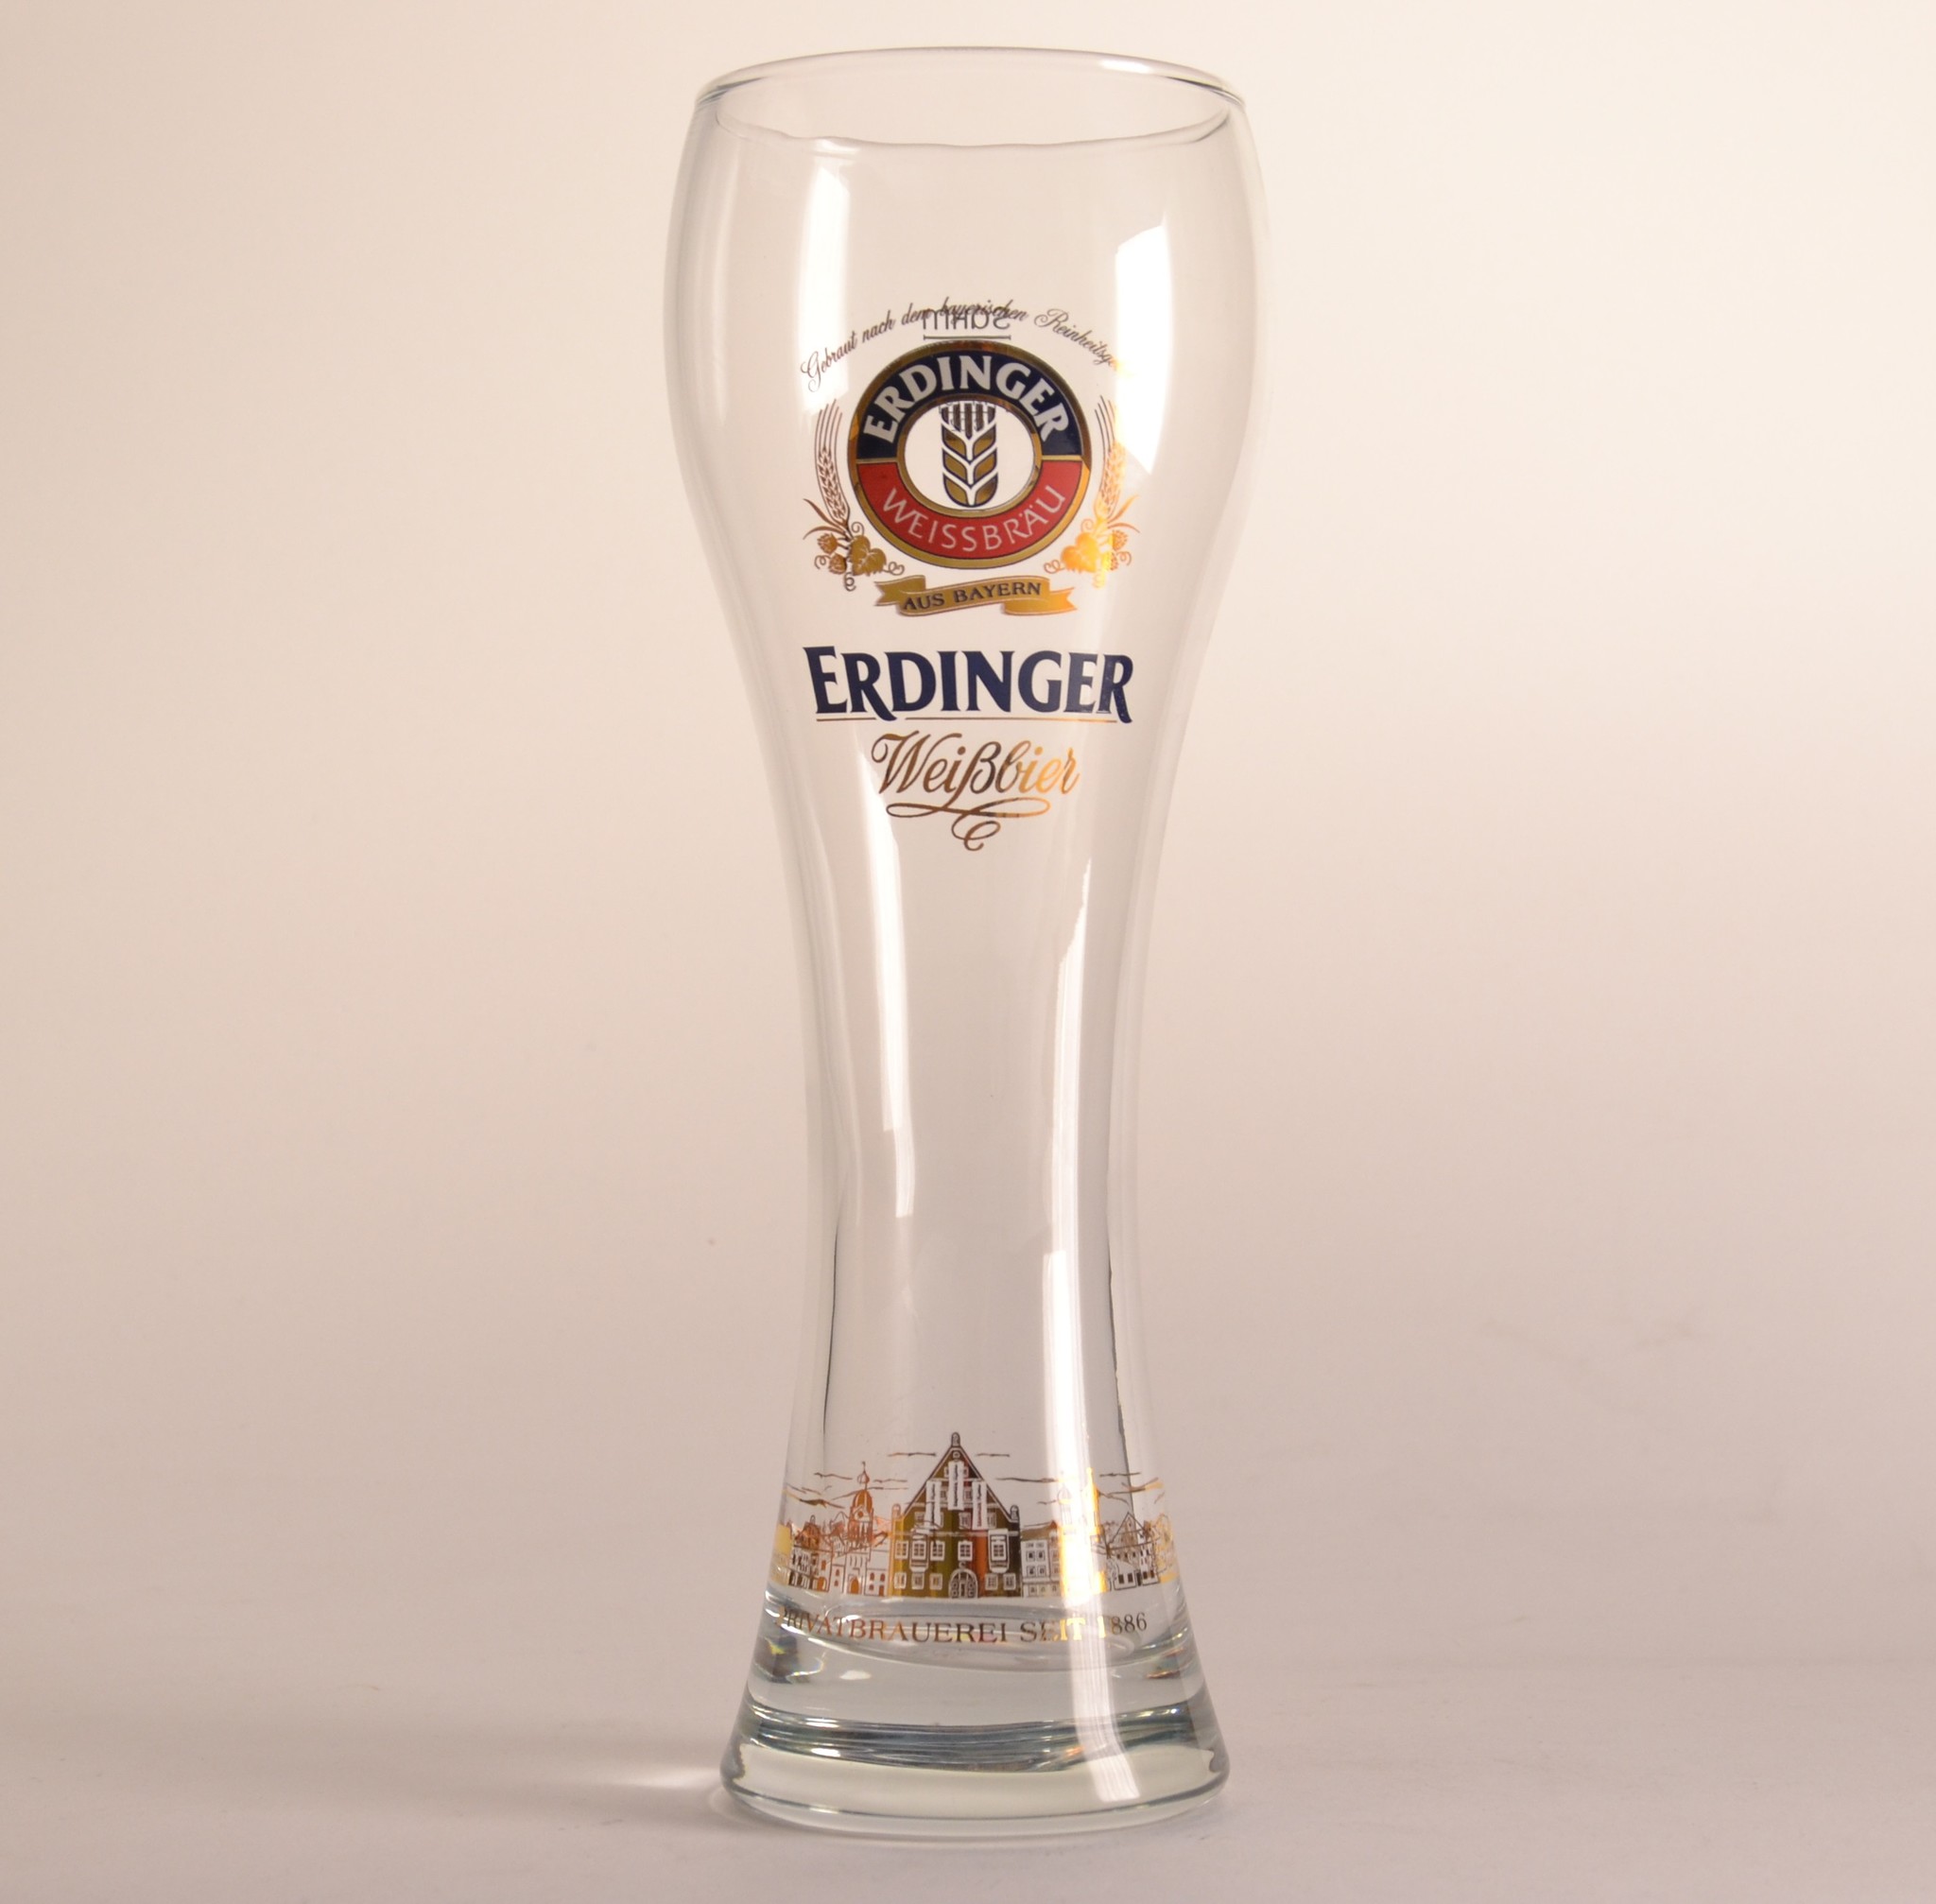 Erdinger Bierglas - 50cl - Buy beer - Belgian Beer Factory